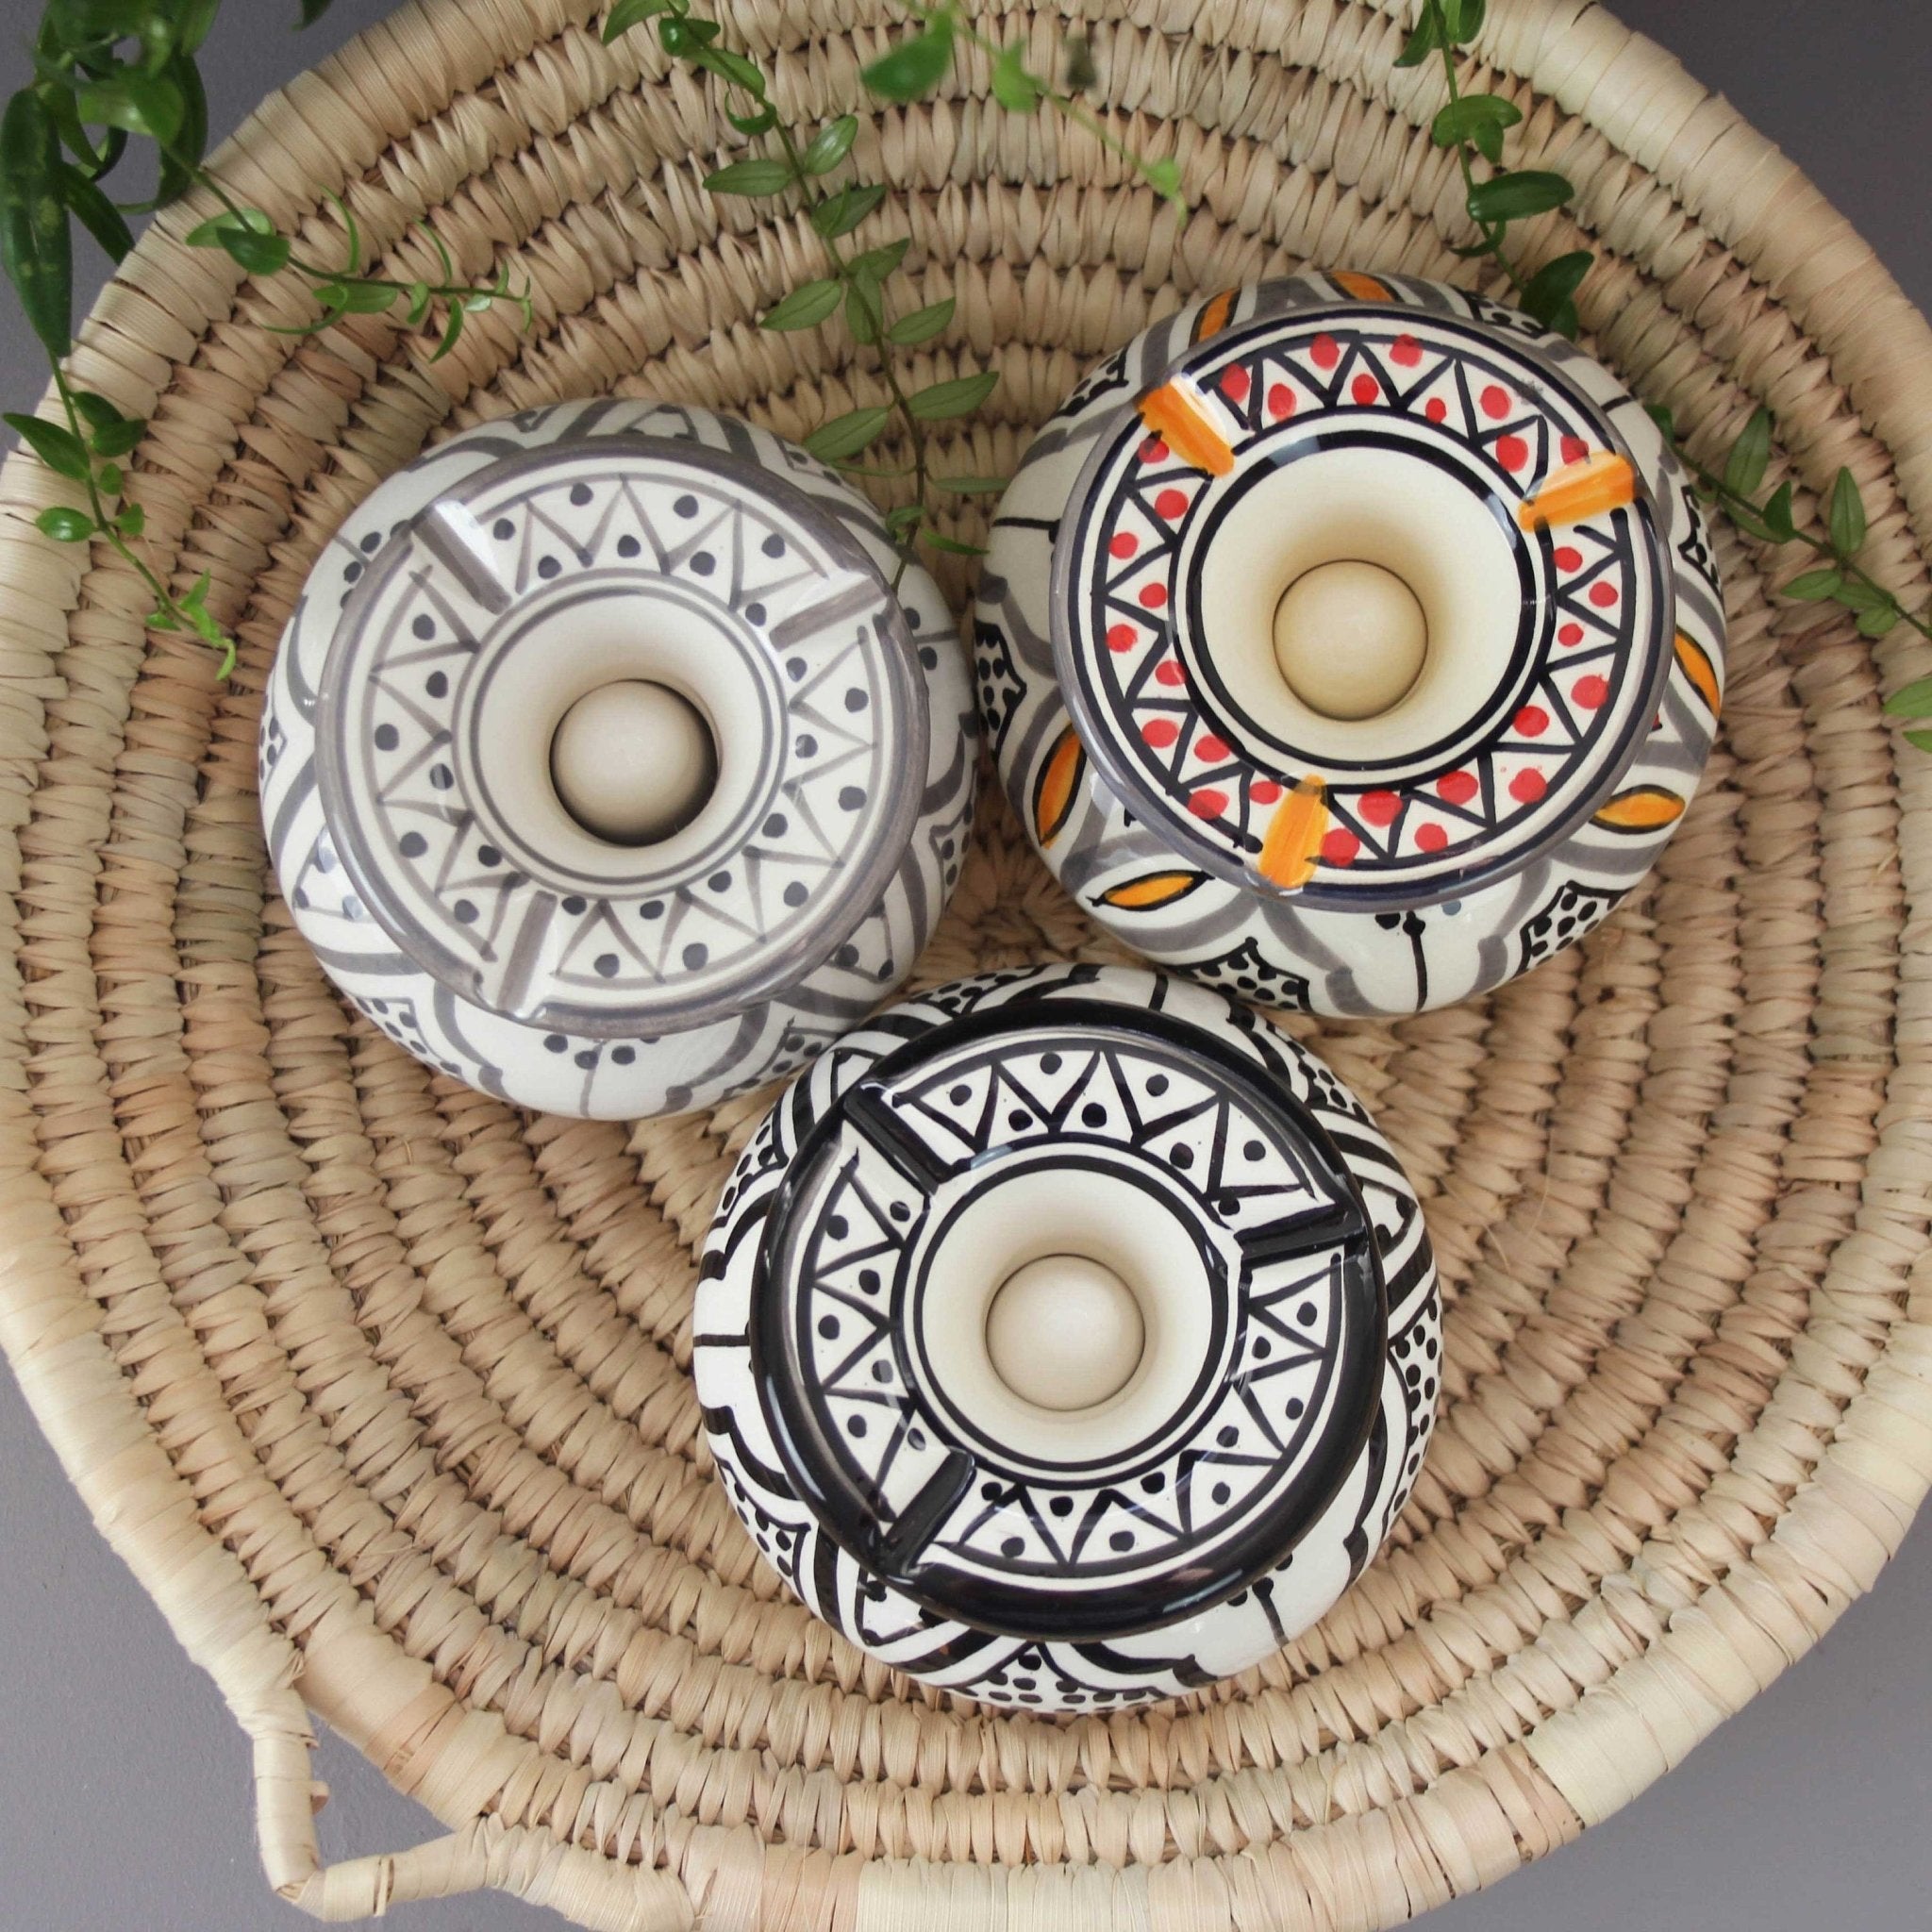 Safa Ceramic Ashtray - Artisan Stories